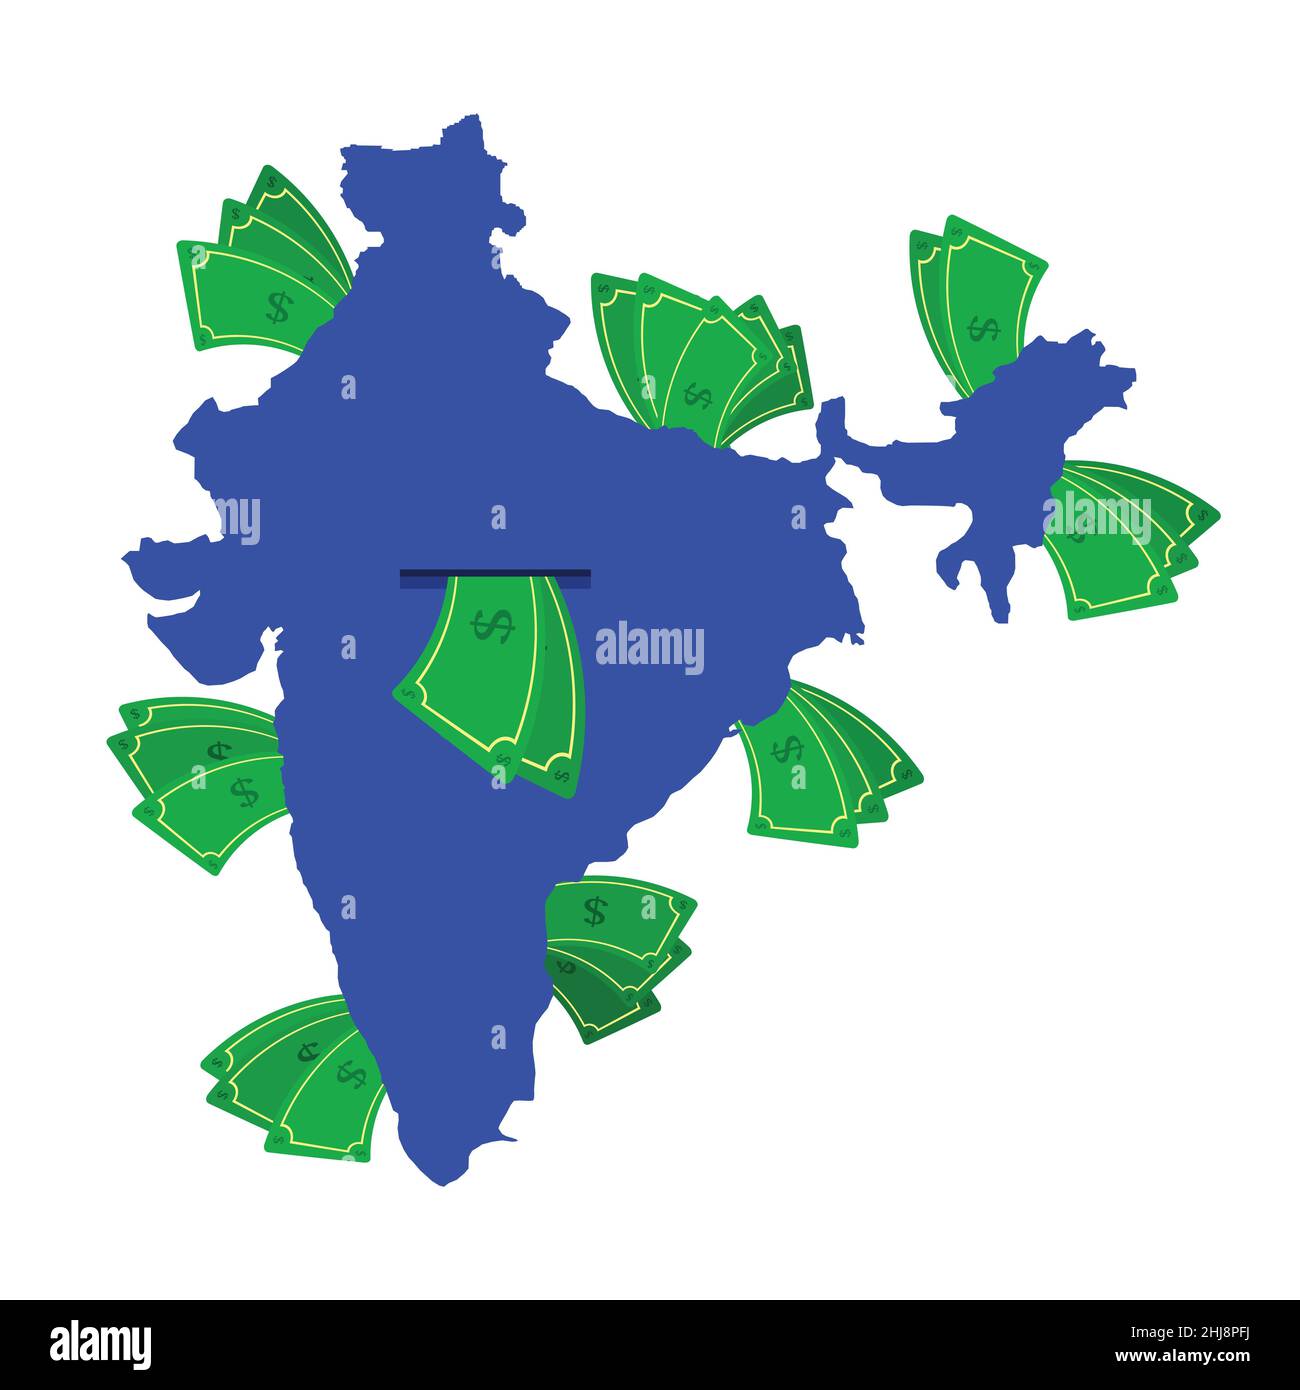 Indien Karte in blau mit Geldscheinen um. Geld verlässt das Zentrum des Landes. Wirtschaft des indischen Landes. Weißer Hintergrund. Isoliert. Stock Vektor